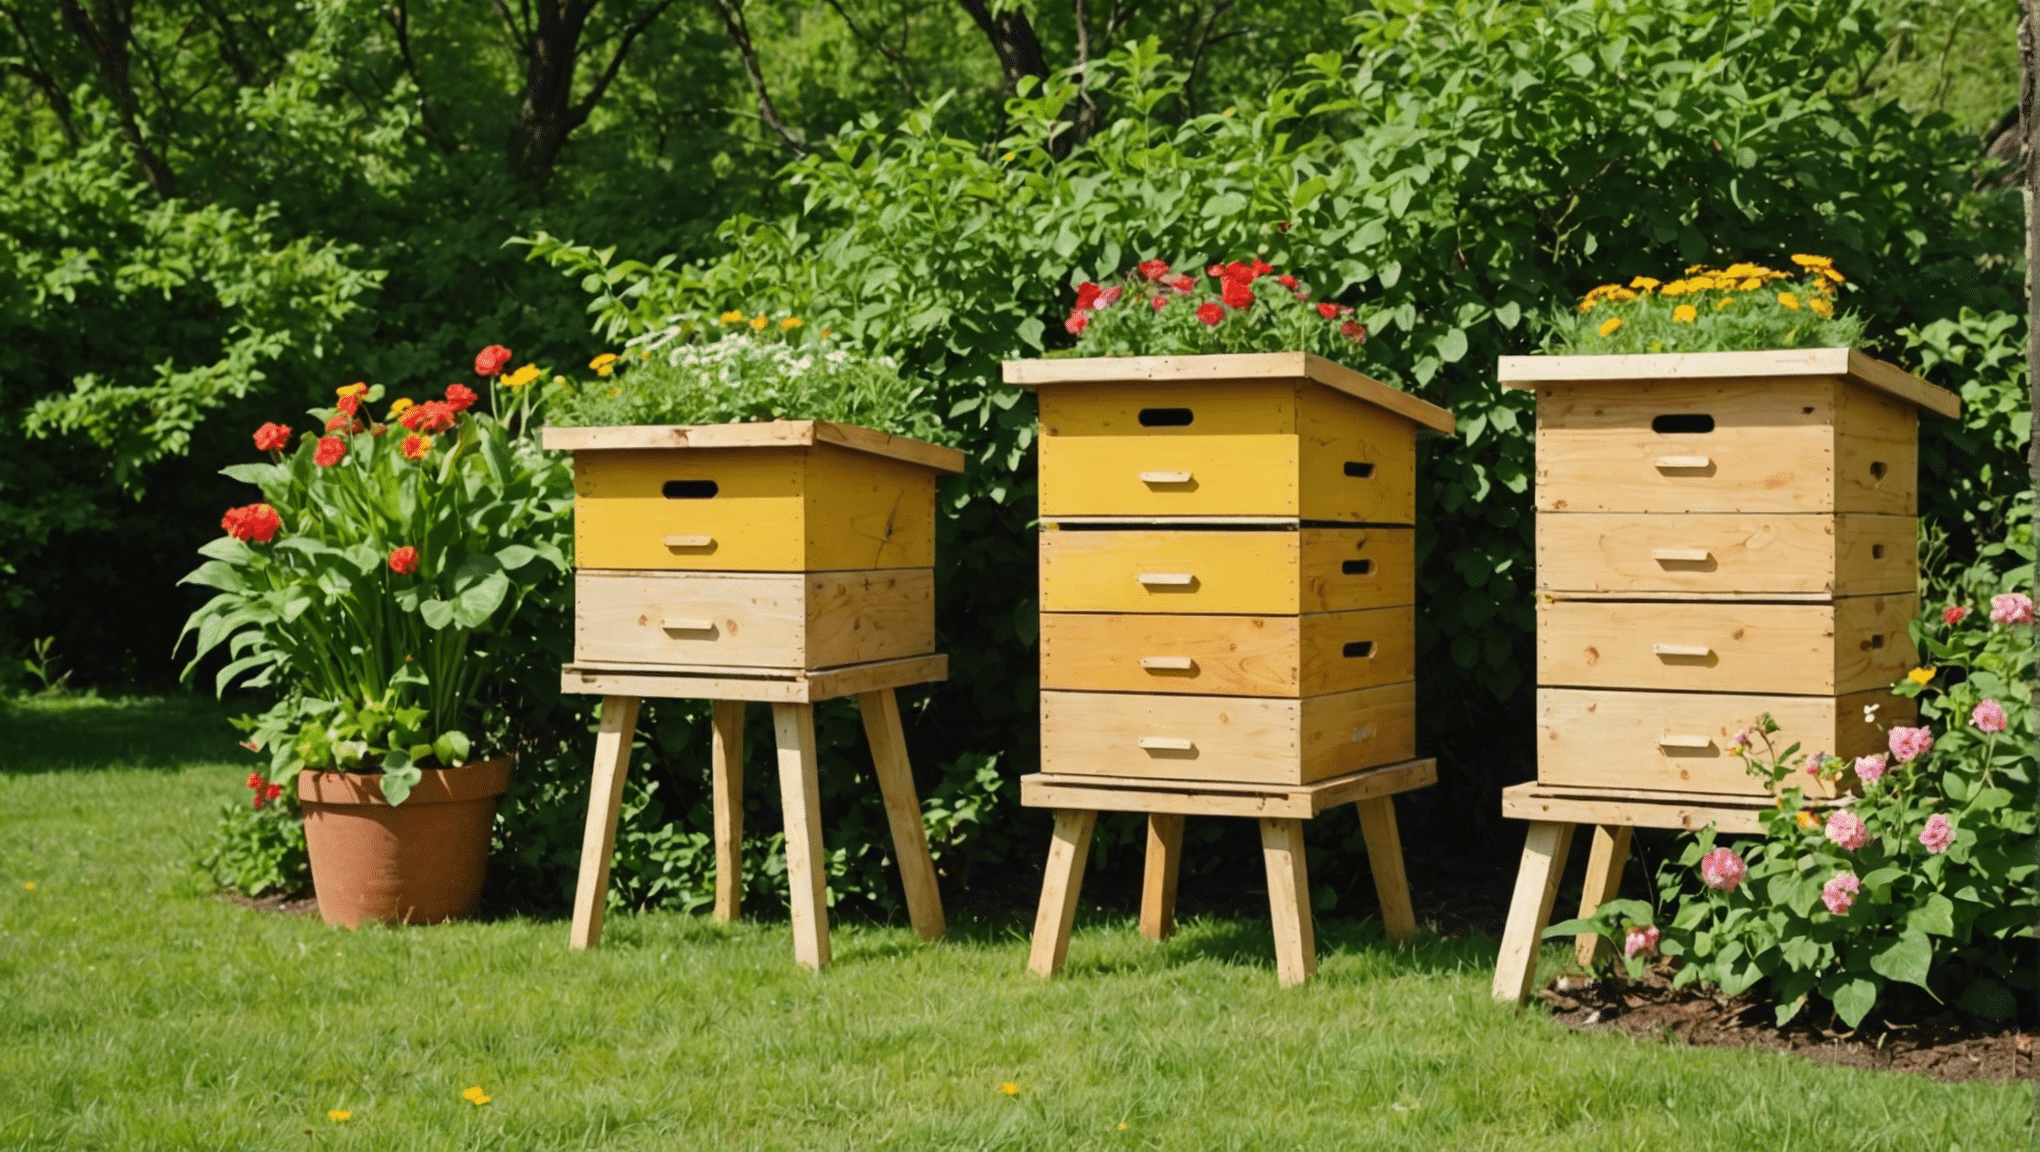 objavte výhody využívania úľových boxov a ako môžu pozitívne ovplyvniť včelárske postupy a produkciu medu.